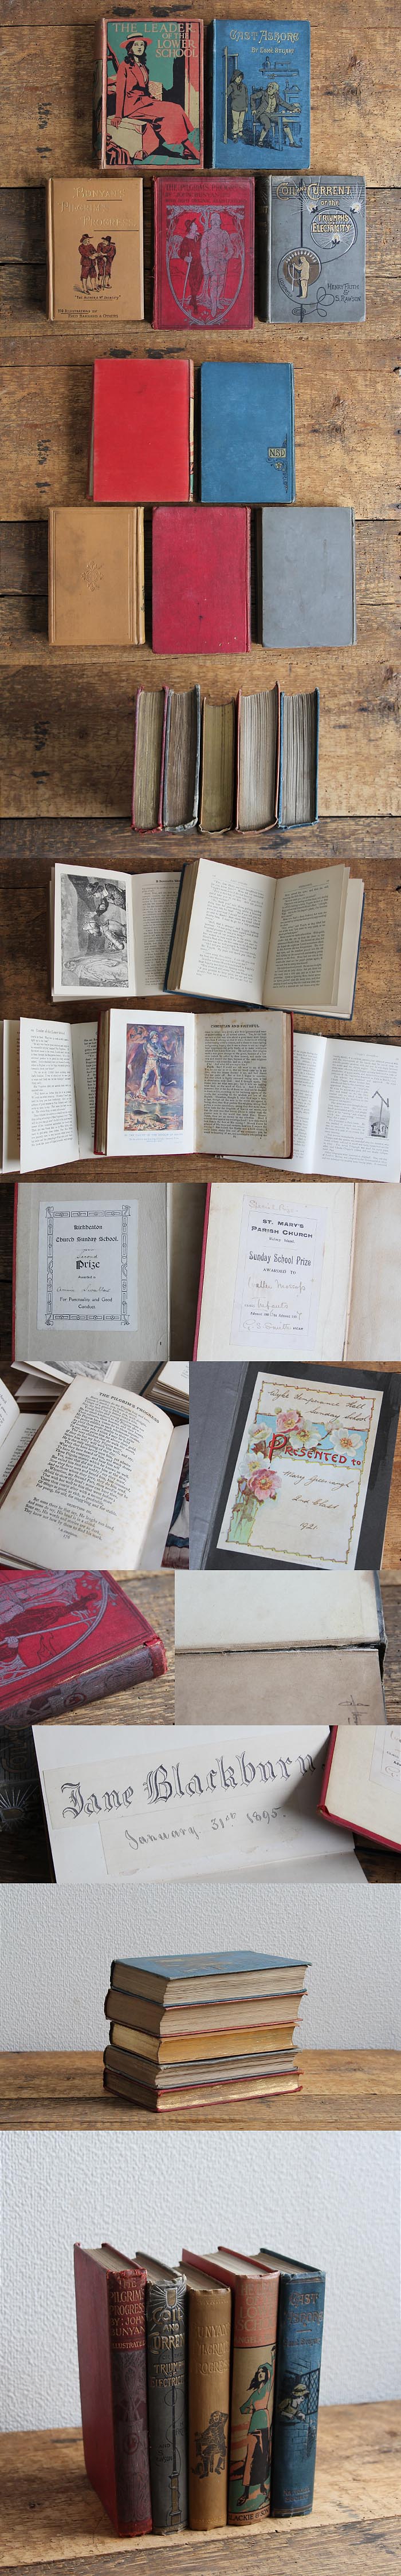 イギリス アンティークブック 5冊セット 古書 インテリア雑貨 洋書 ディスプレイ「雰囲気パーフェクト」V-806